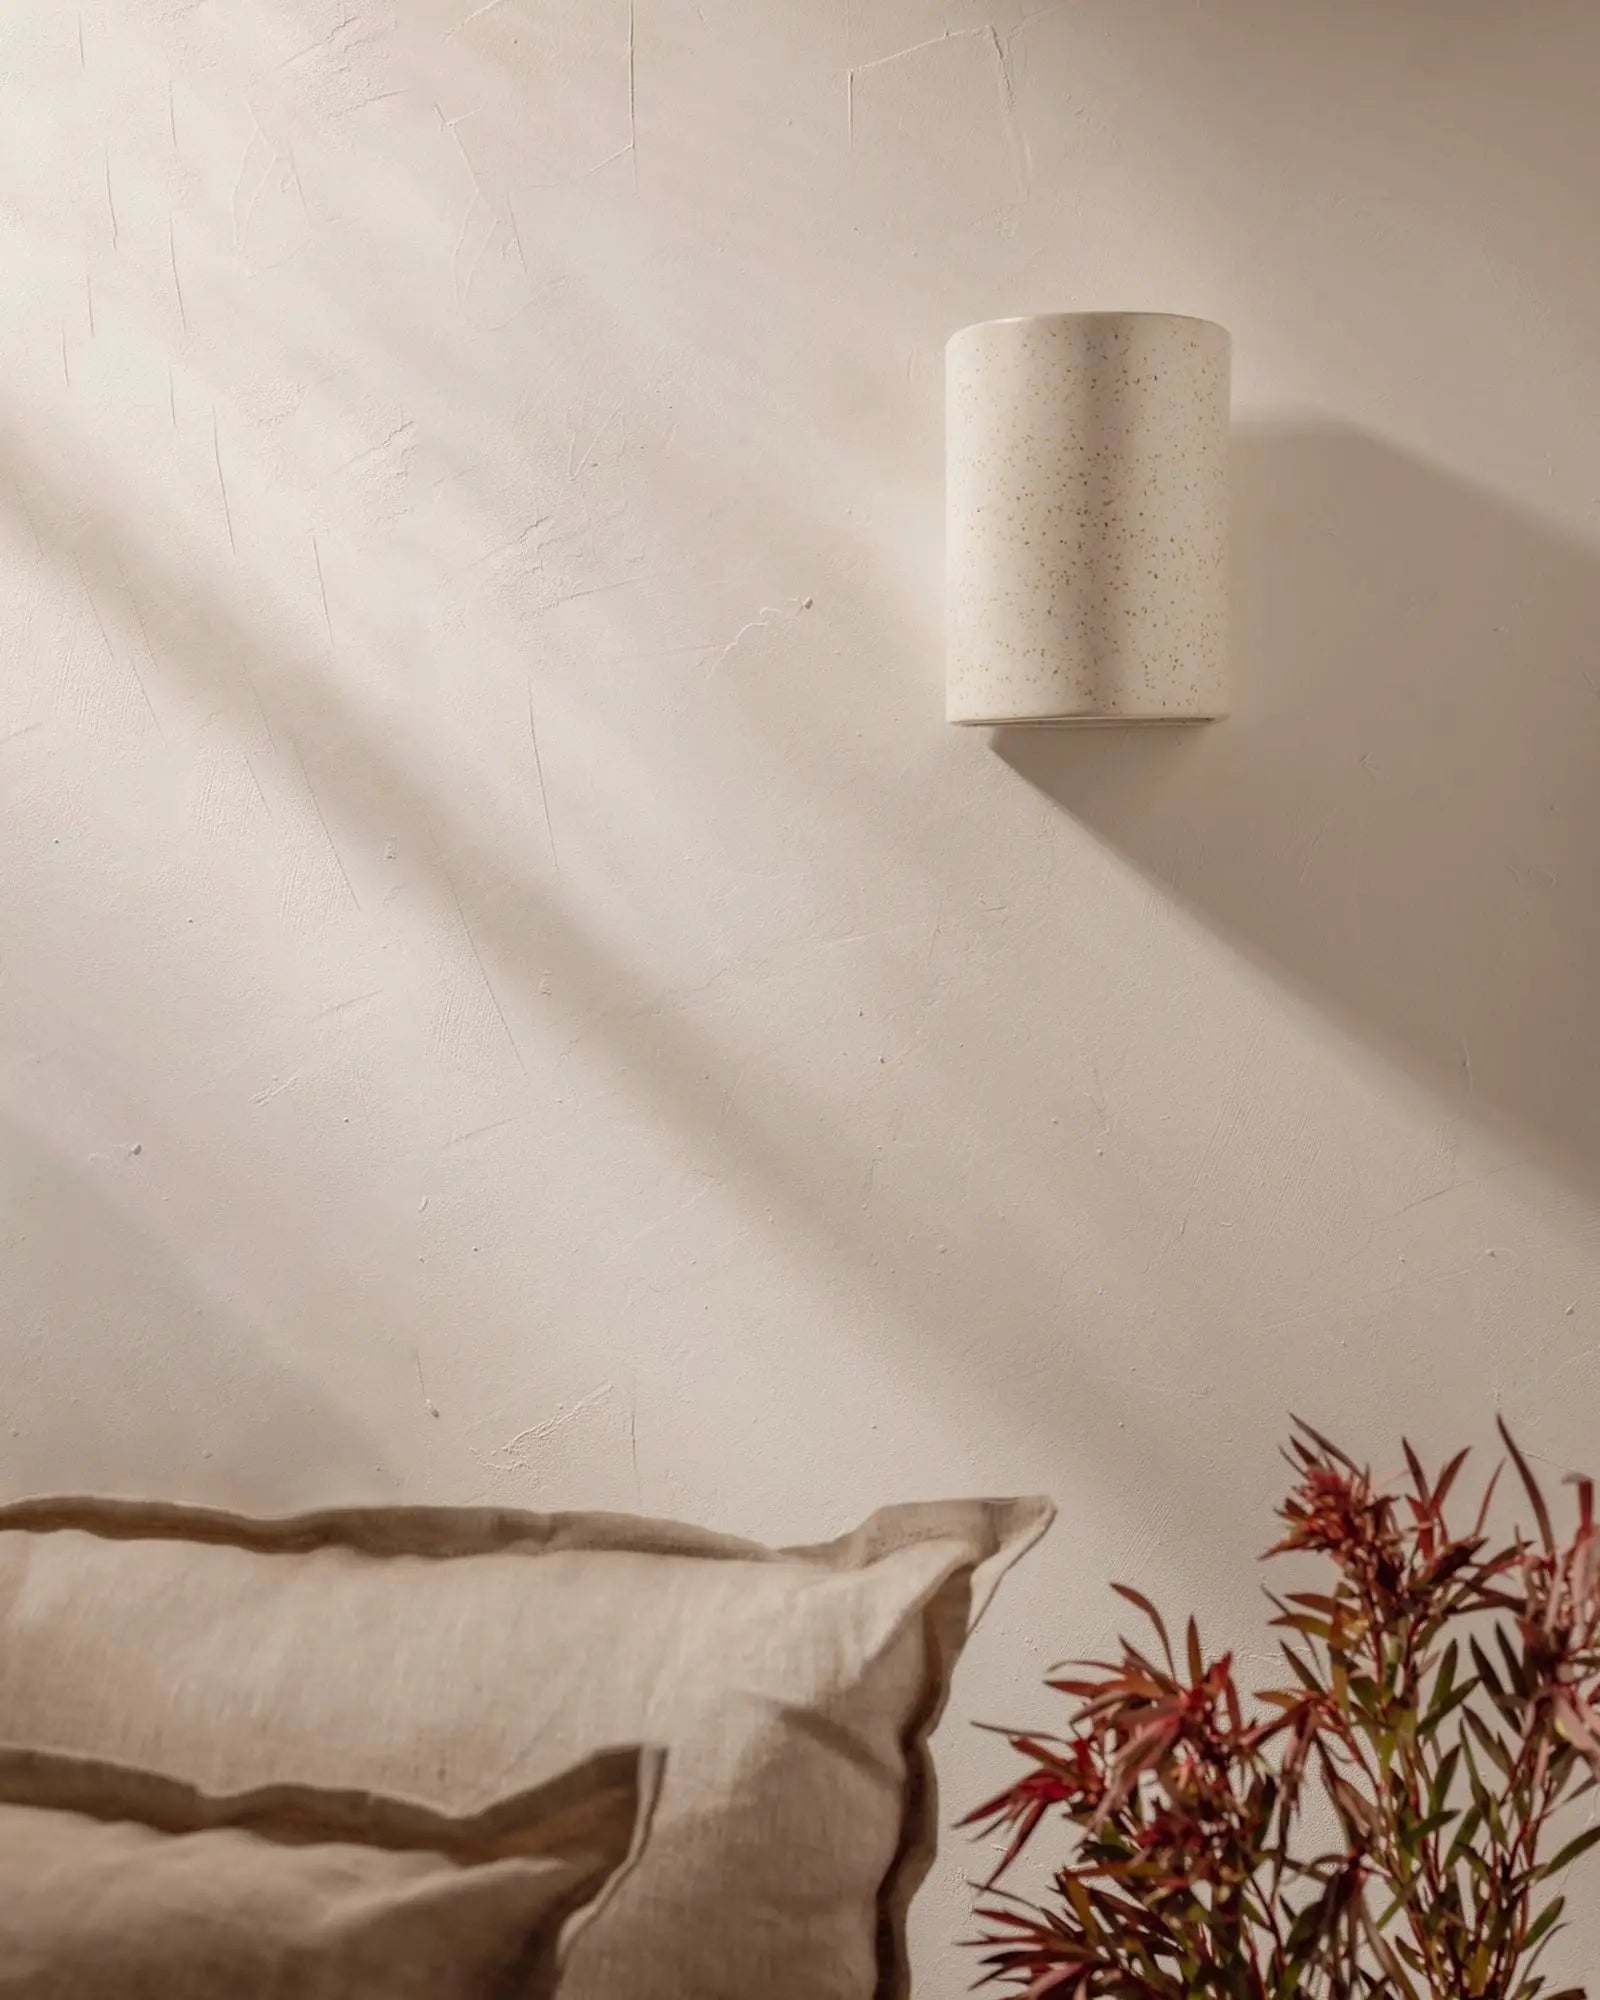 Freckles handmade ceramic wall light above a sofa